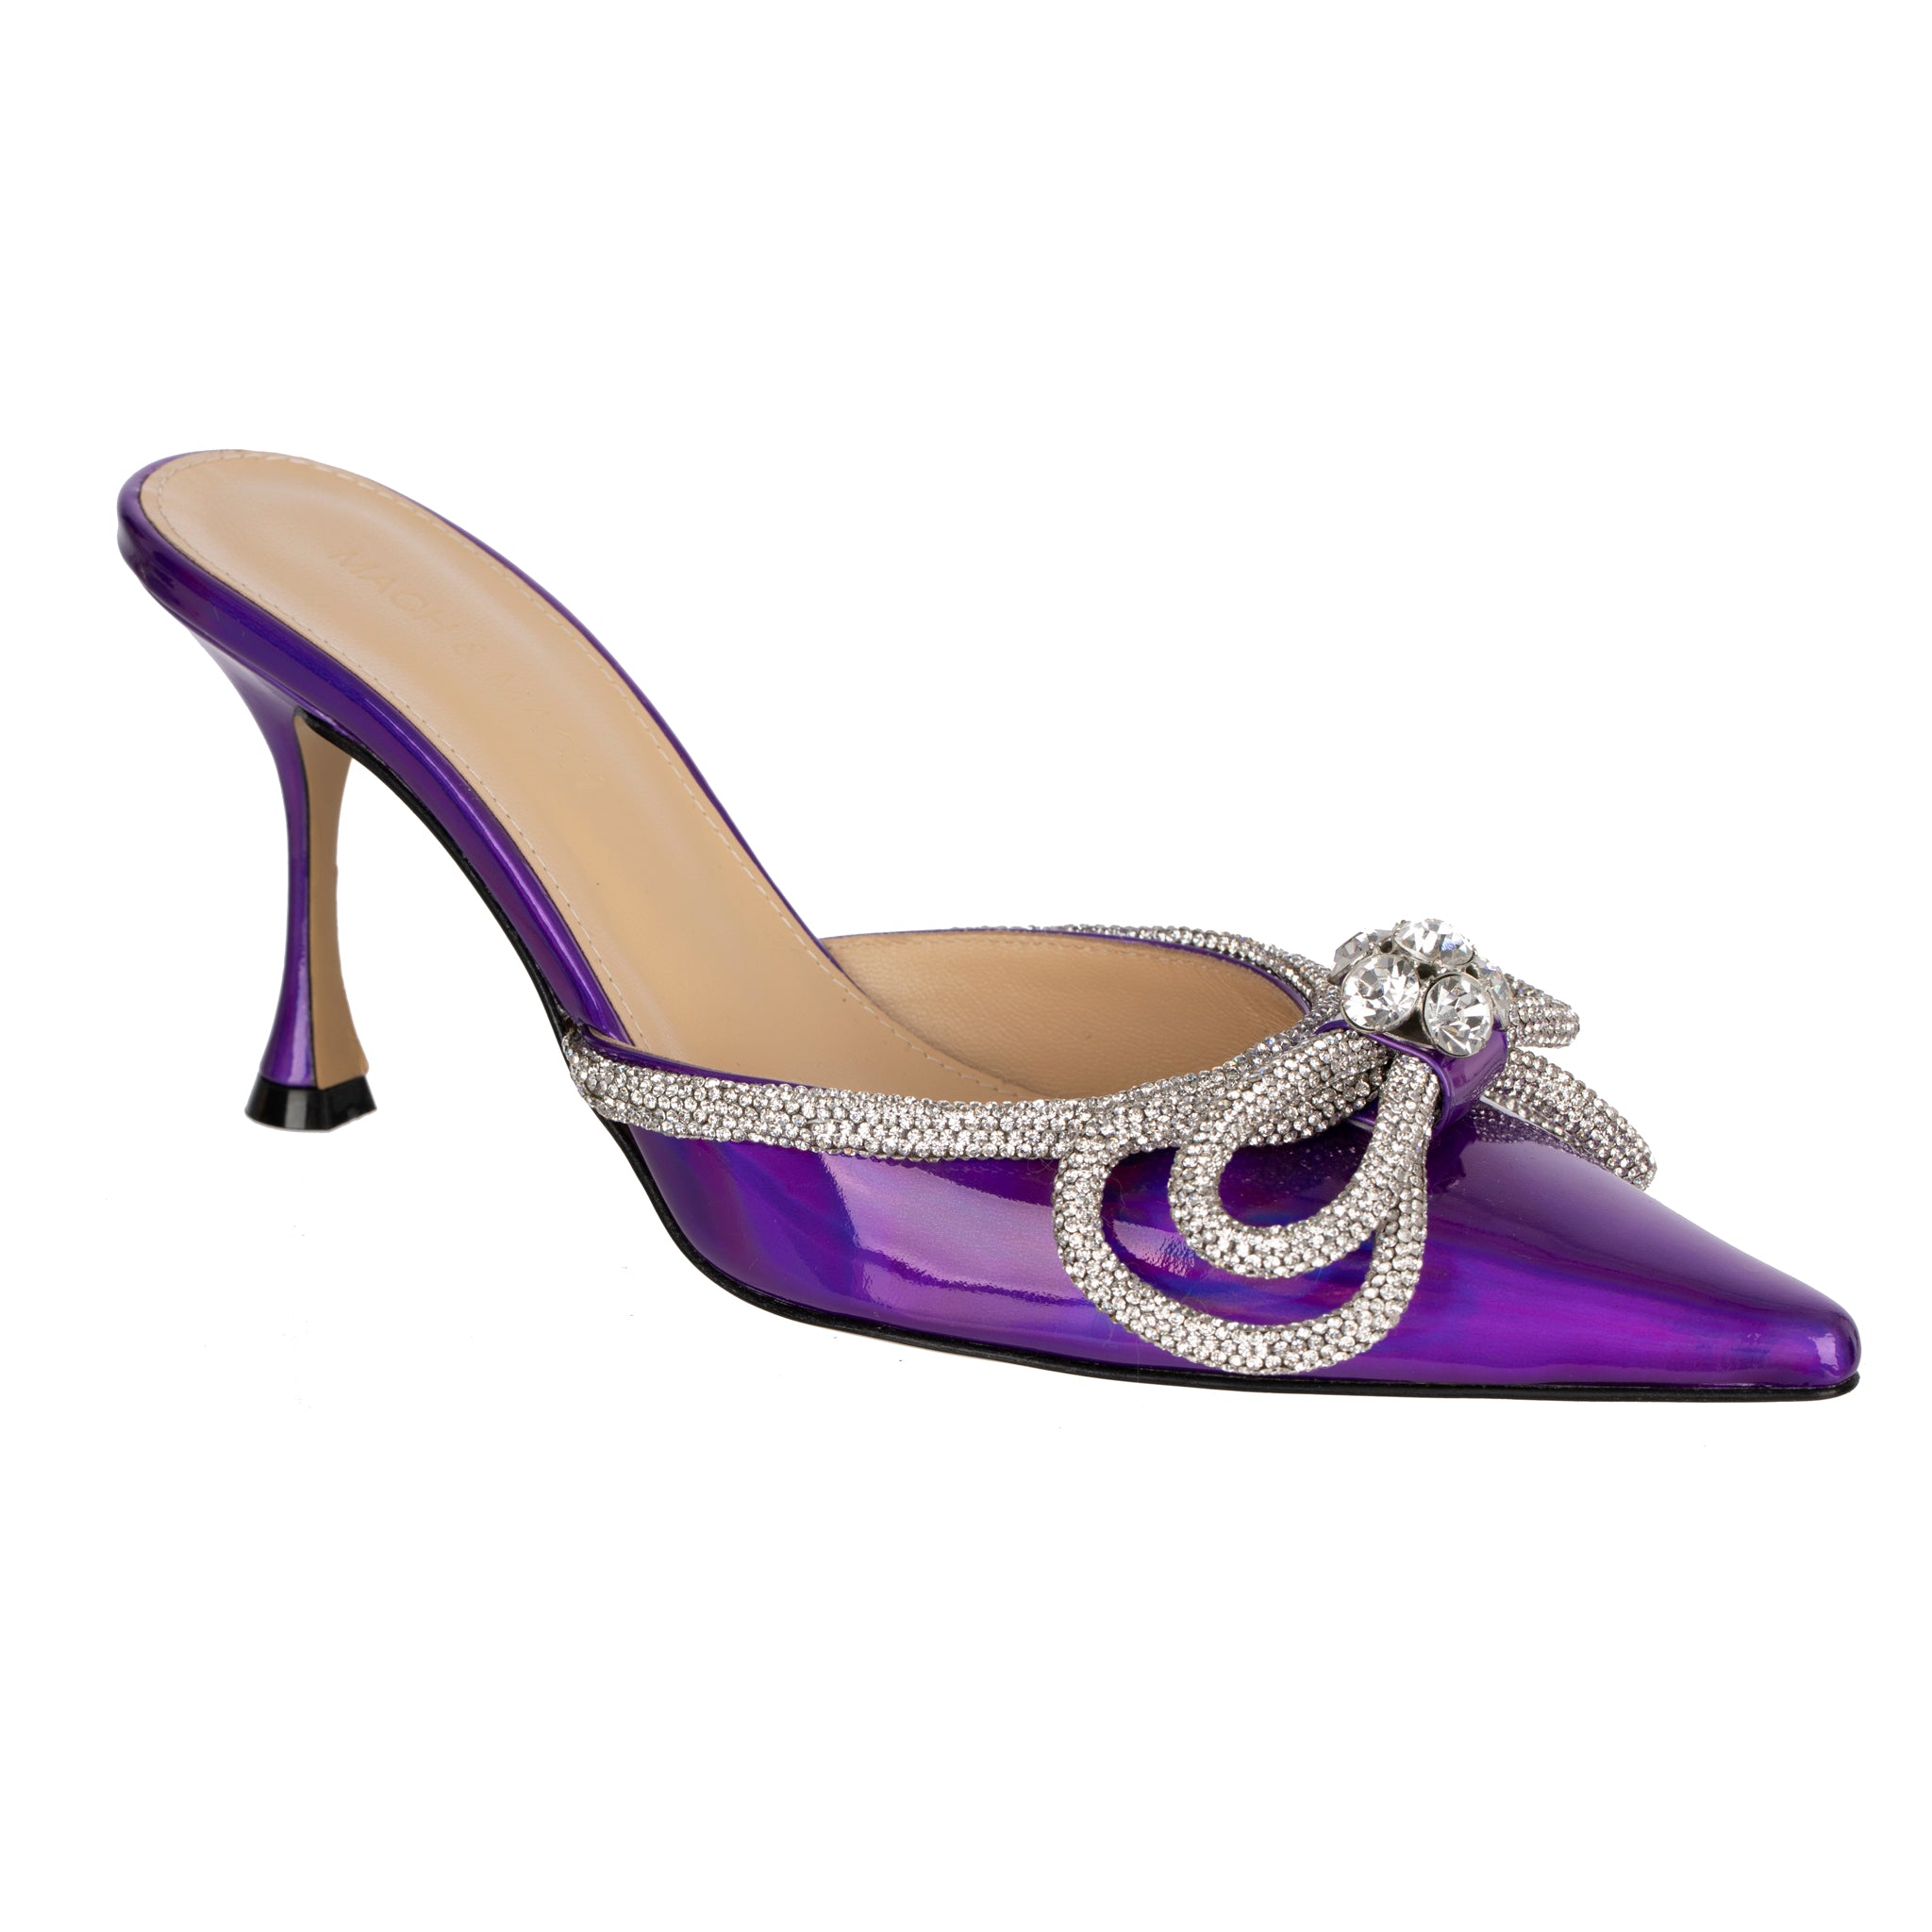 Mach & Mach Kitten Heel Iridescent Purple With Crystal Details 38